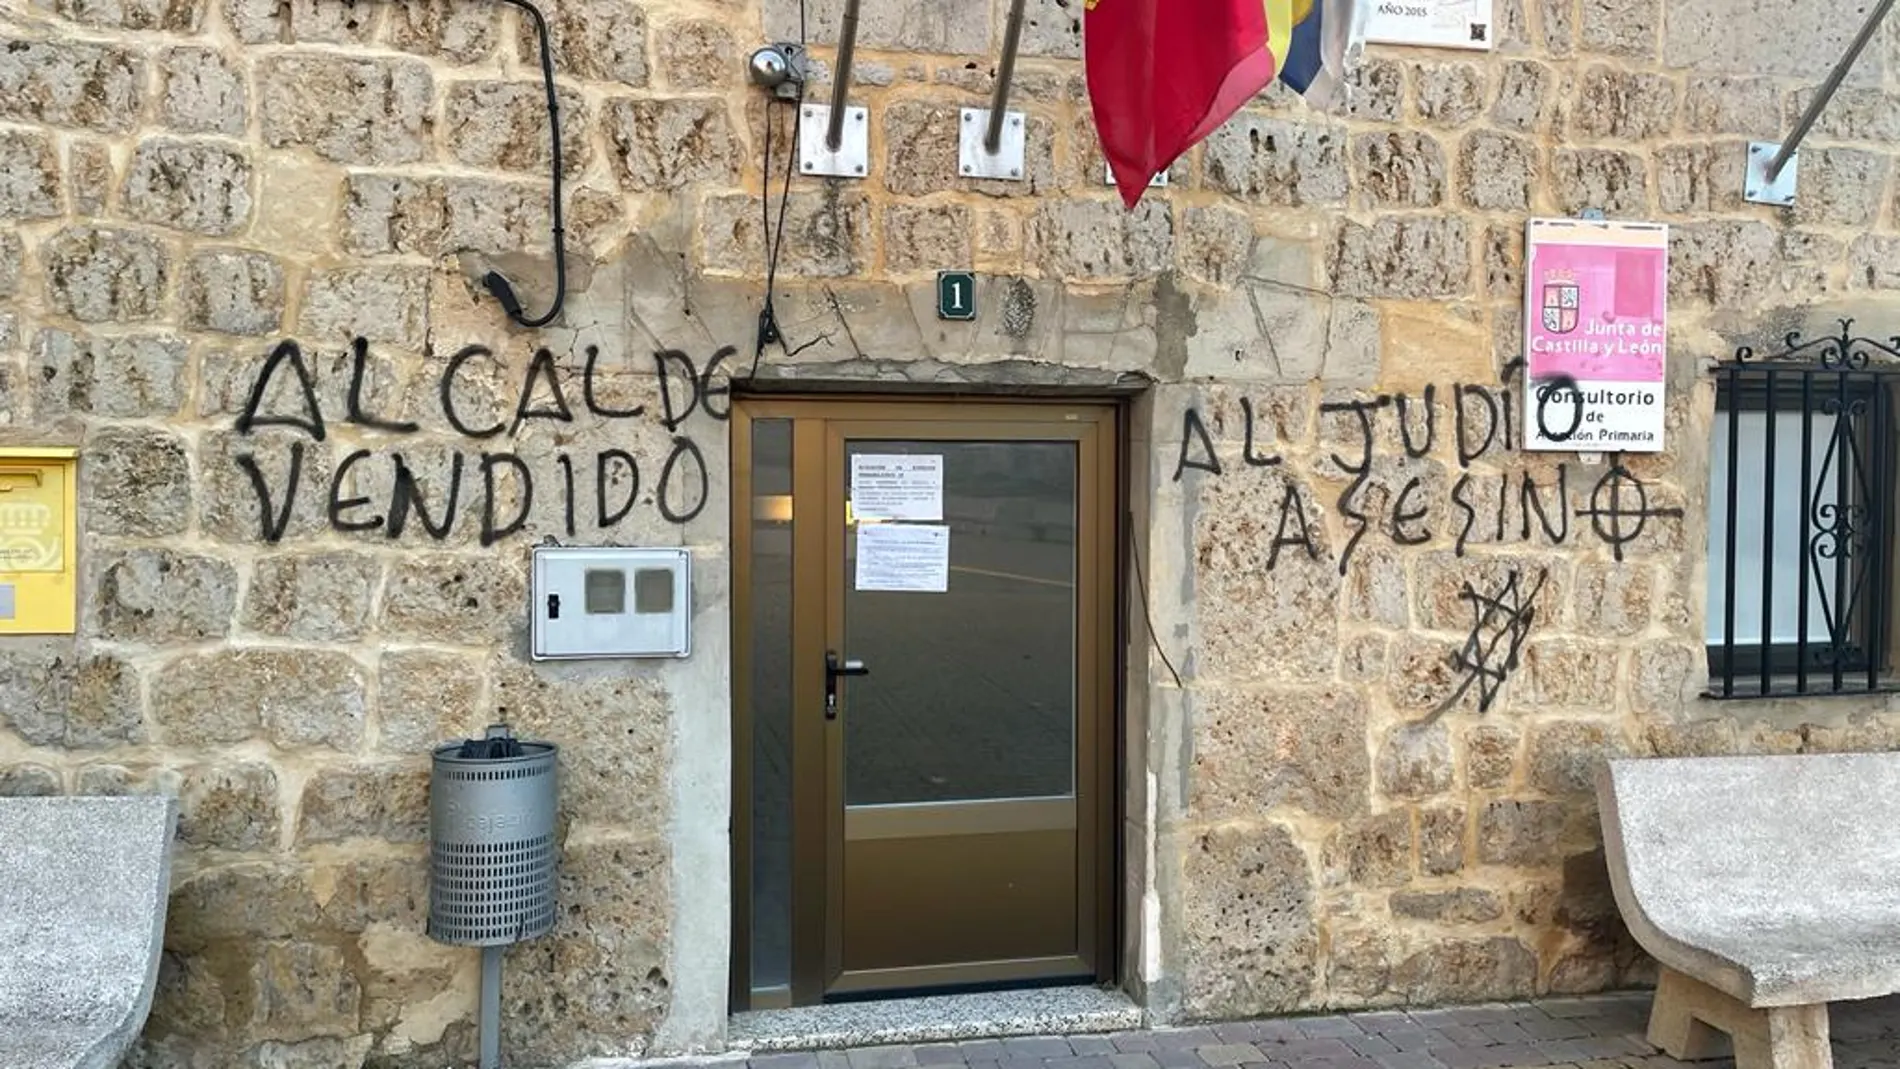 Pintadas contra el alcalde Castrillo Mota de Judíos en la fachada de este ayuntamiento burgalés